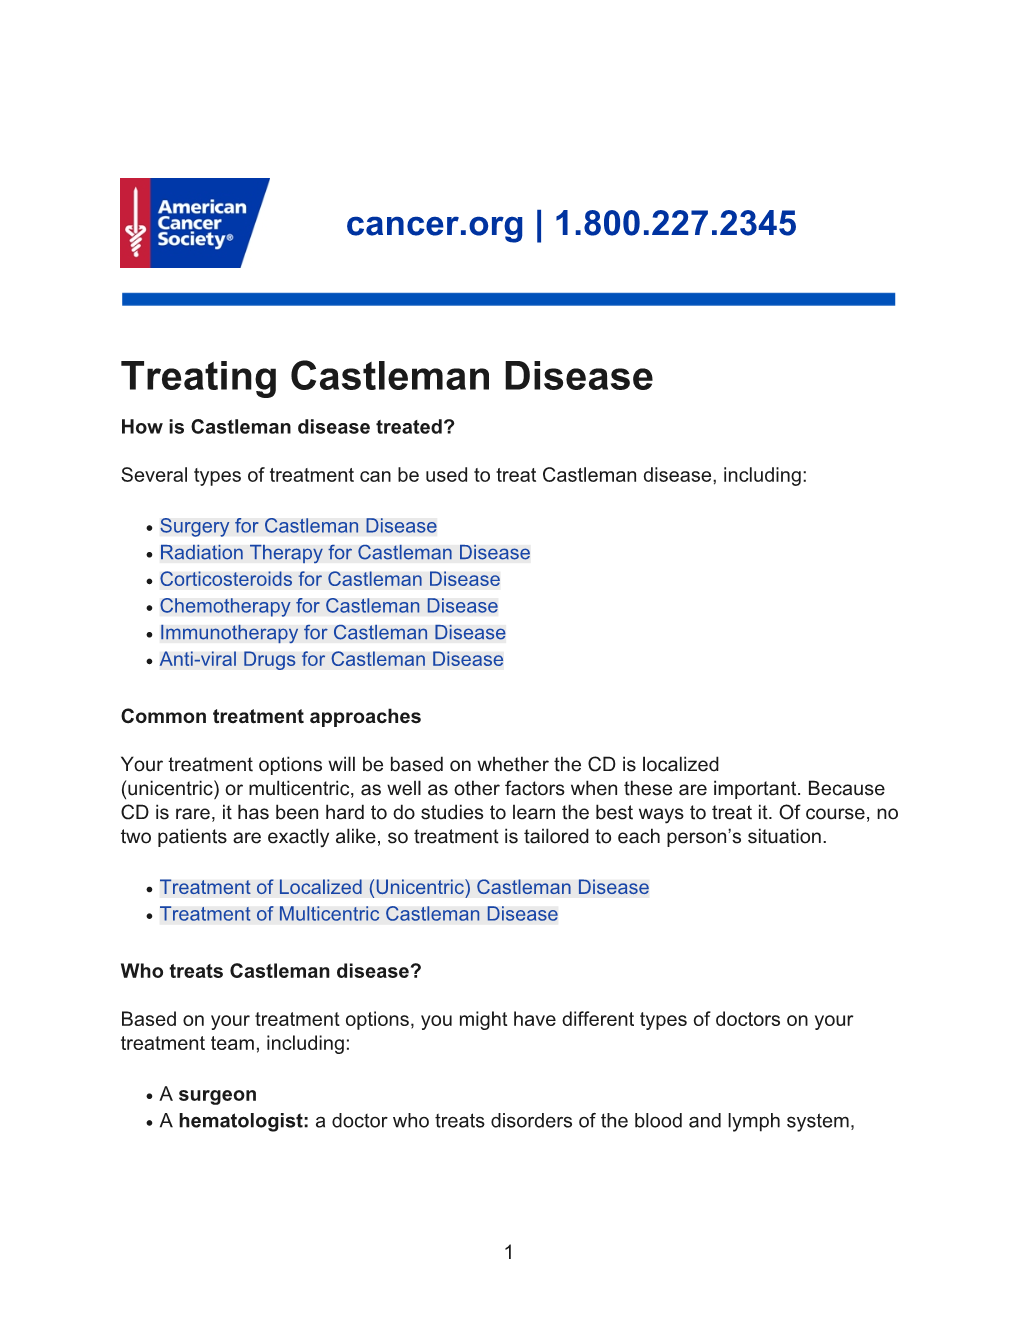 Treating Castleman Disease How Is Castleman Disease Treated?